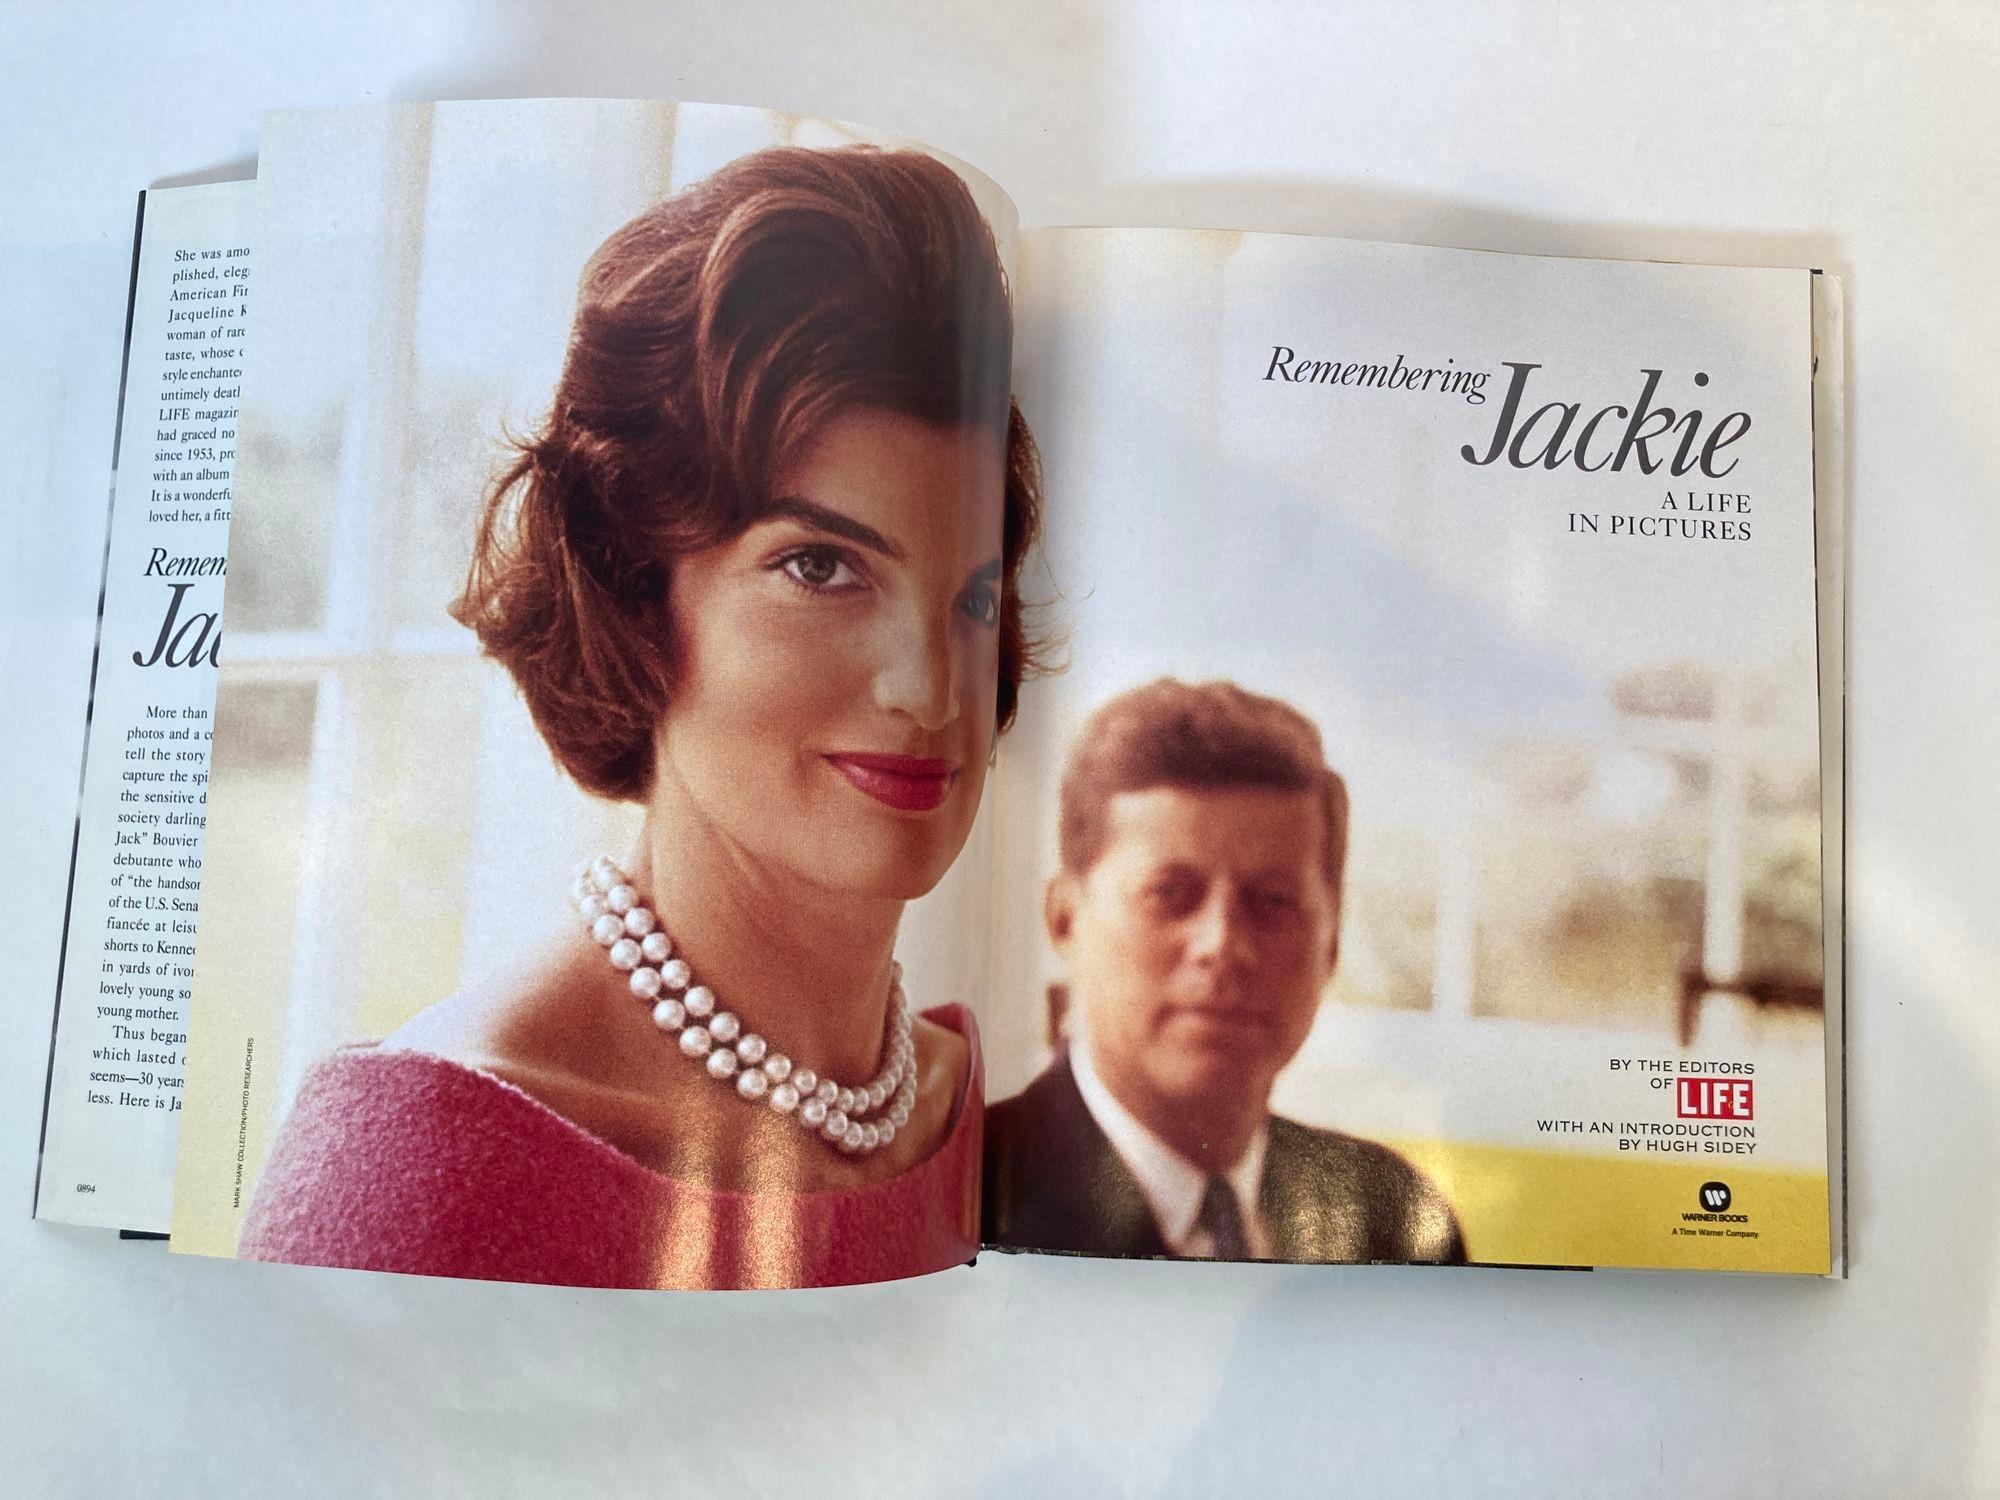 Remembering Jackie : A Life in Pictures Hardcover - 1er janvier 1994 par Life Magazine.
S'appuie sur des photographies pour retracer la vie de l'ancienne première dame, notamment son enfance, son mariage, sa vie de famille, ses années à la Maison